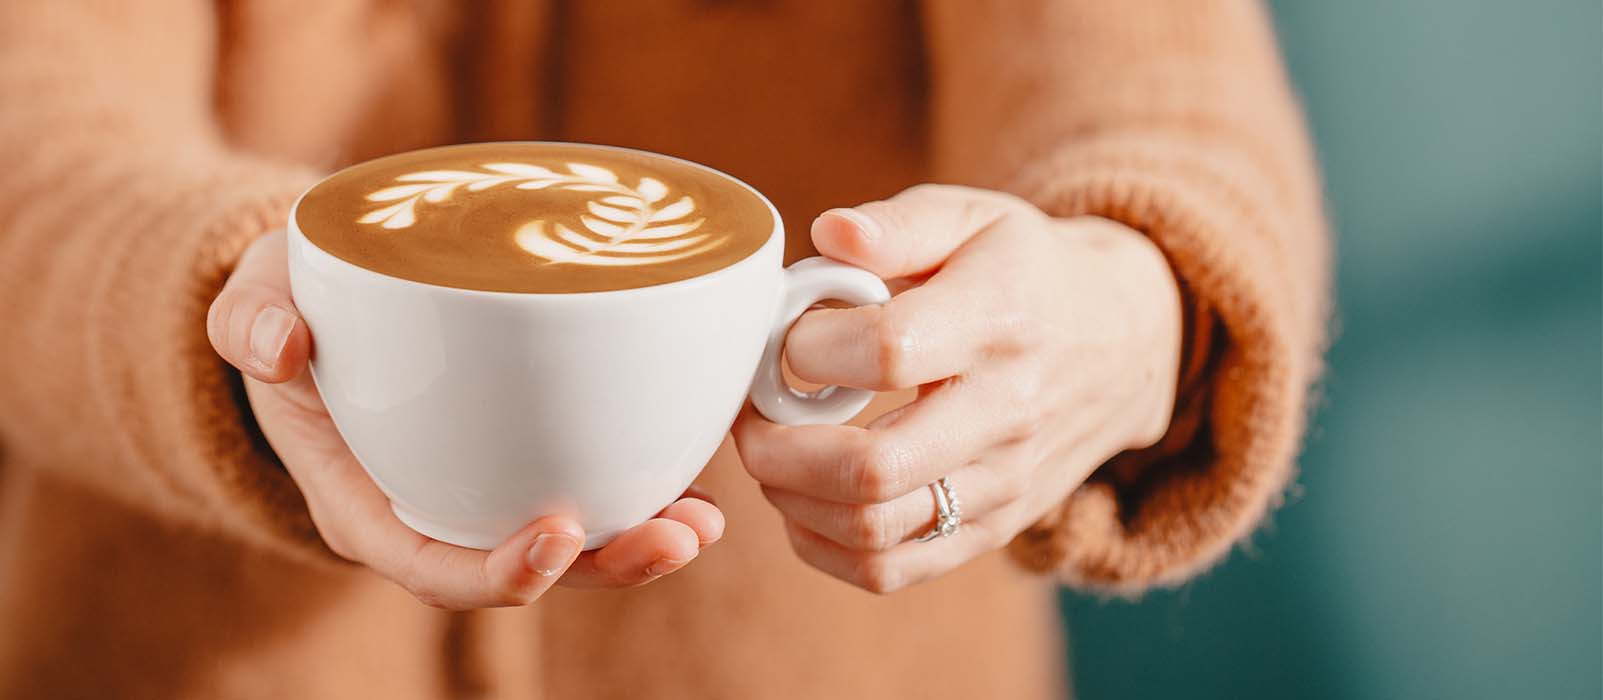 Contenance tasse à café : quelle tasse pour quel café?